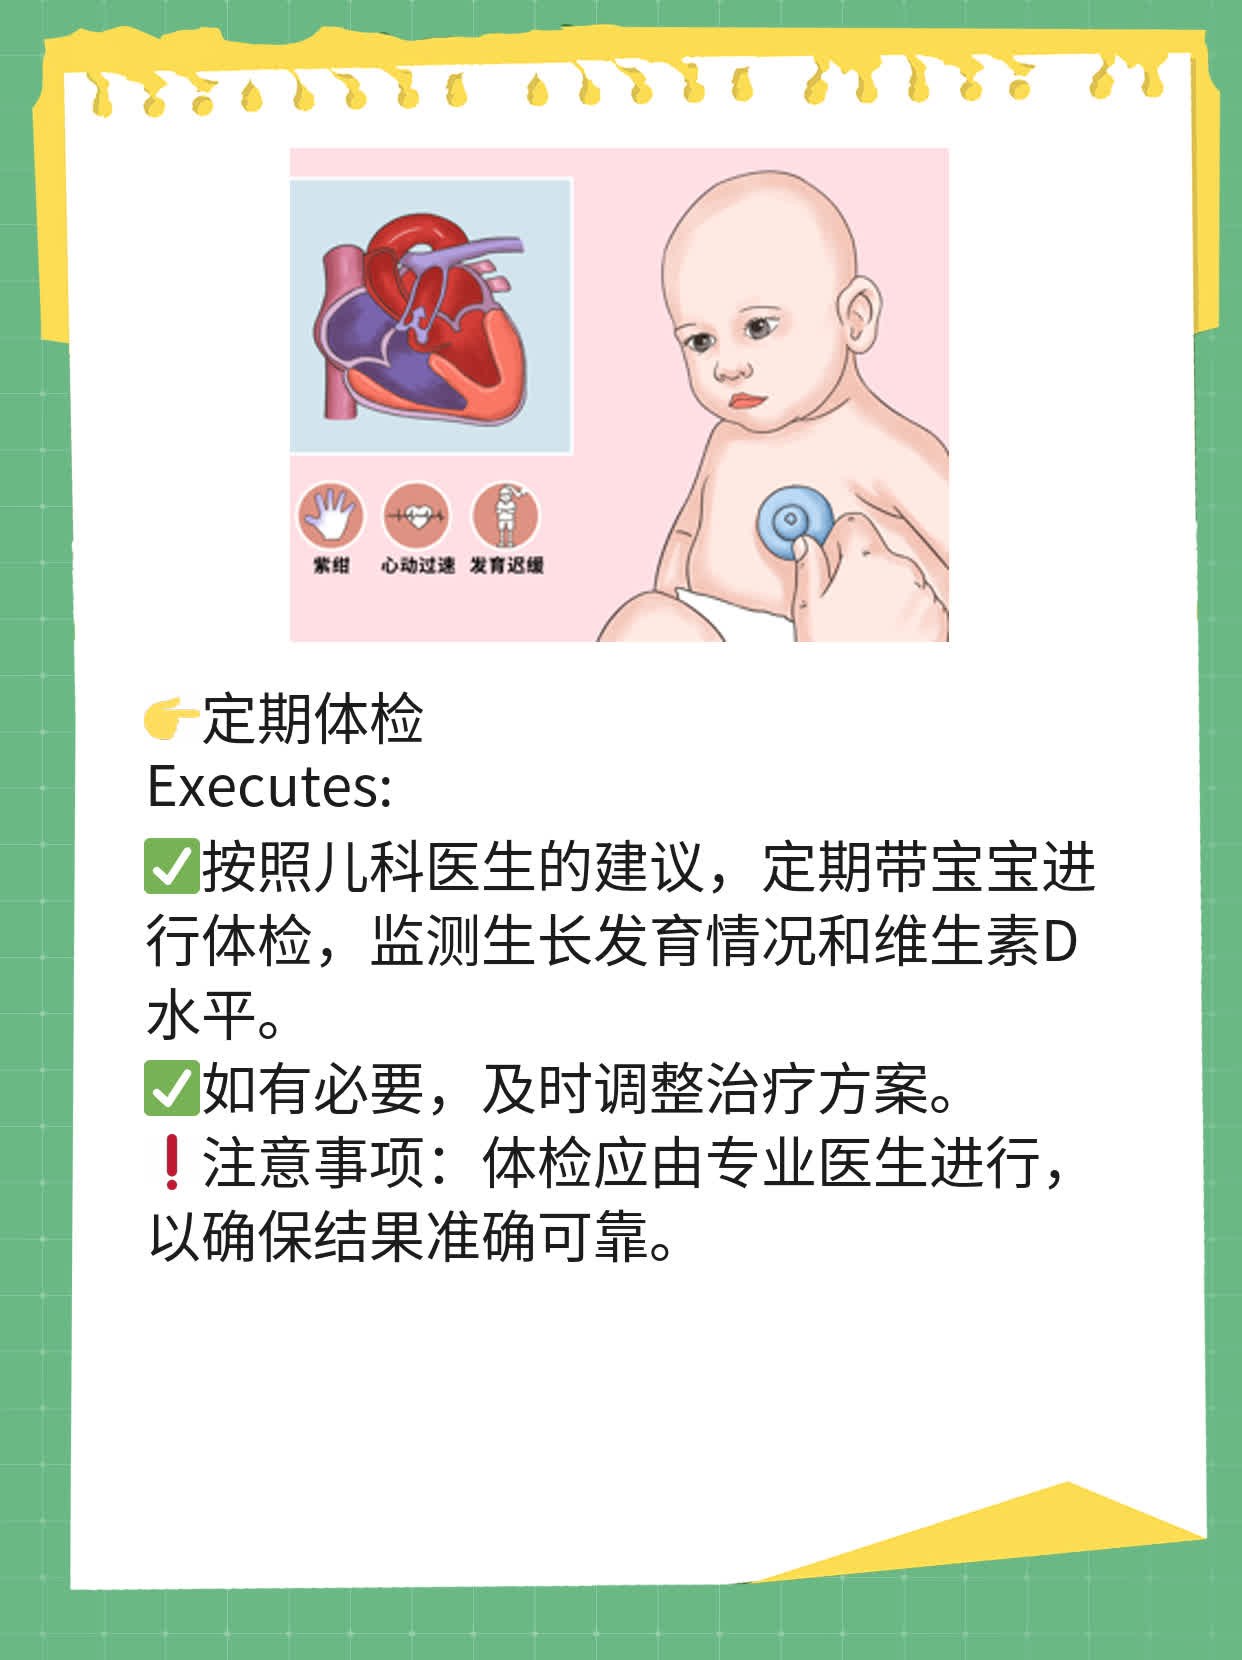 「育儿小贴士」新生儿佝偻病前额凸出畸形图解